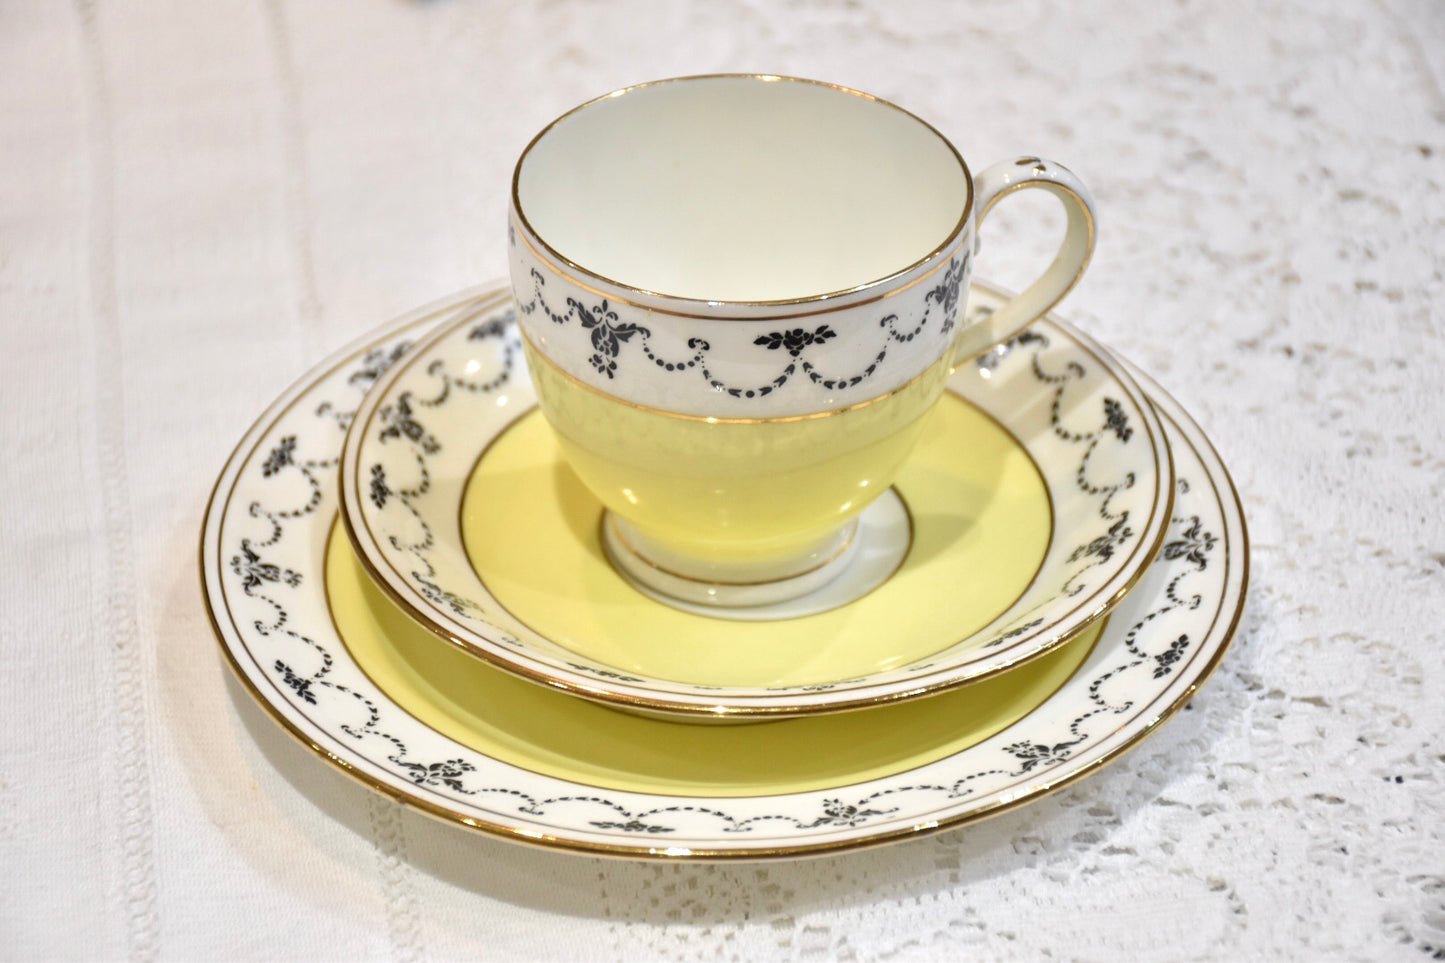 Springtime Yellow Teacup & Saucer Set